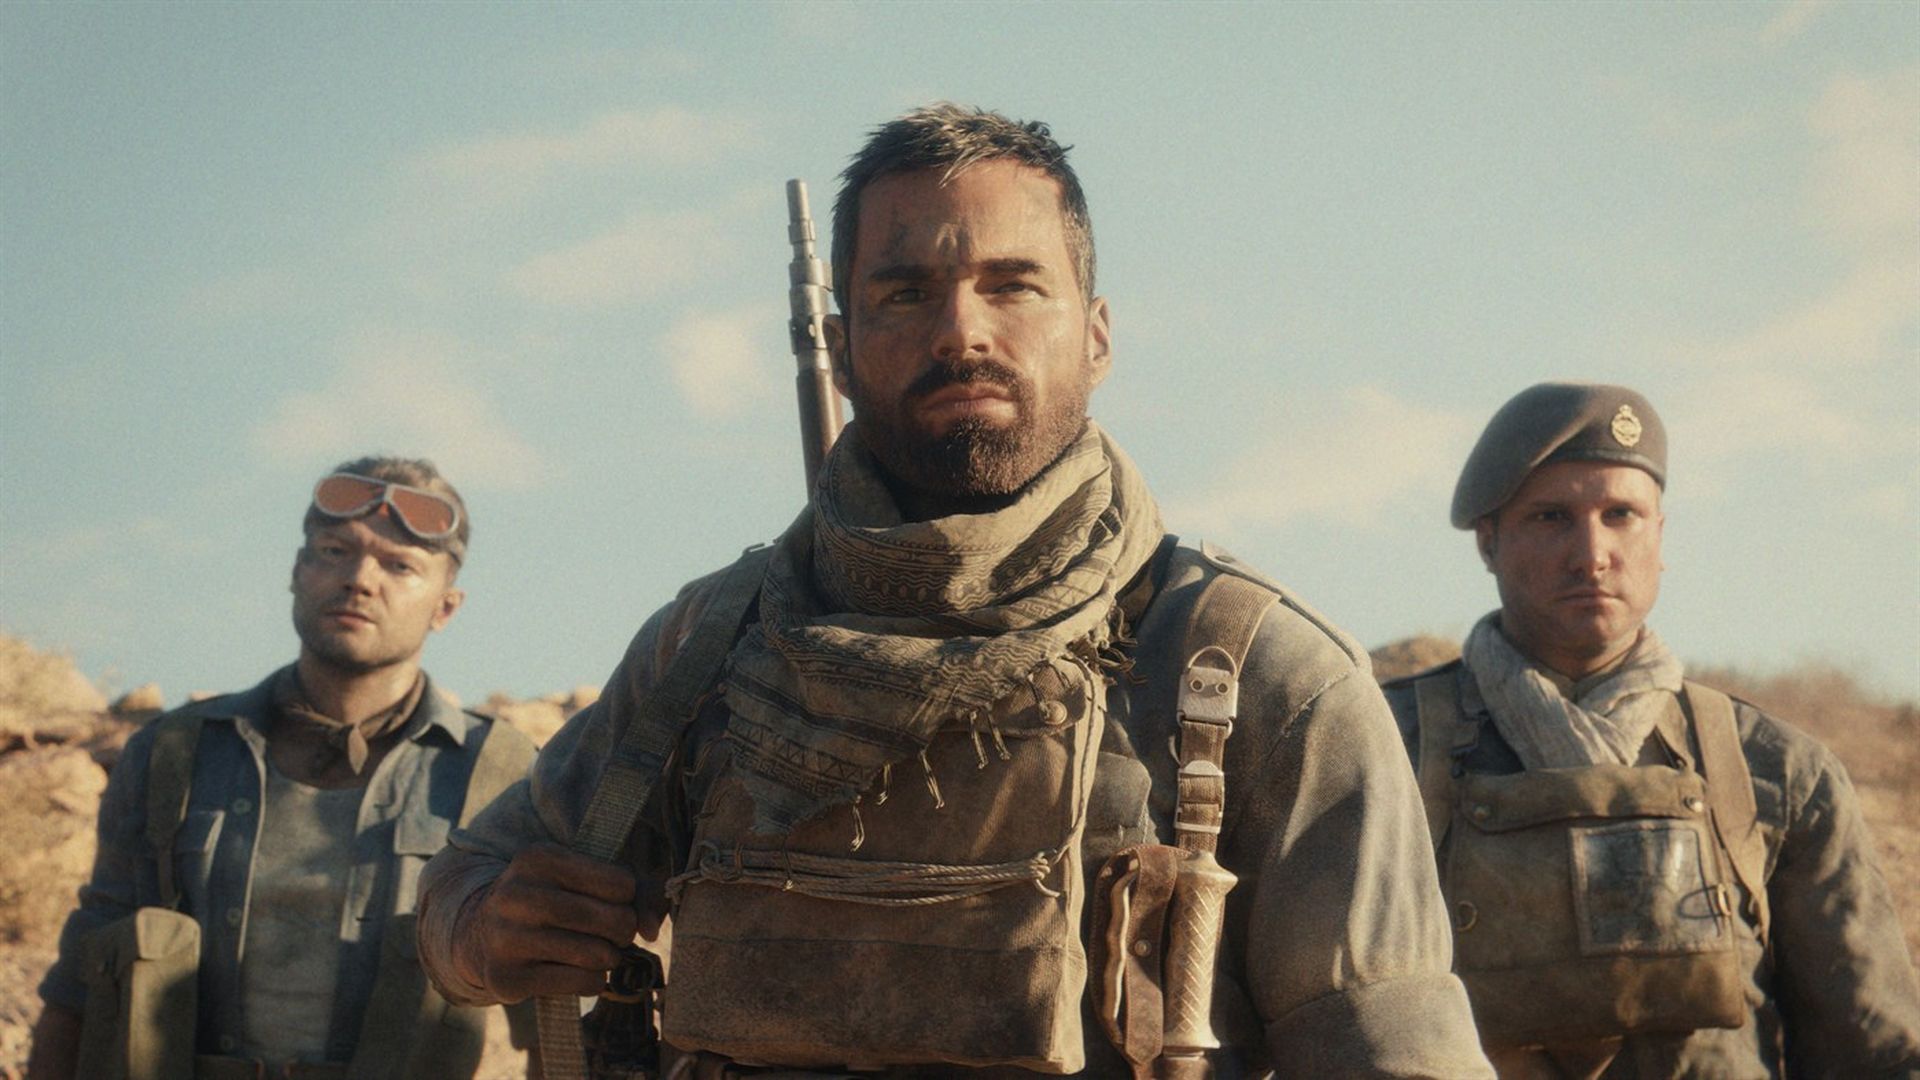 Trailer screenshot of World War II soldiers standing in a desert